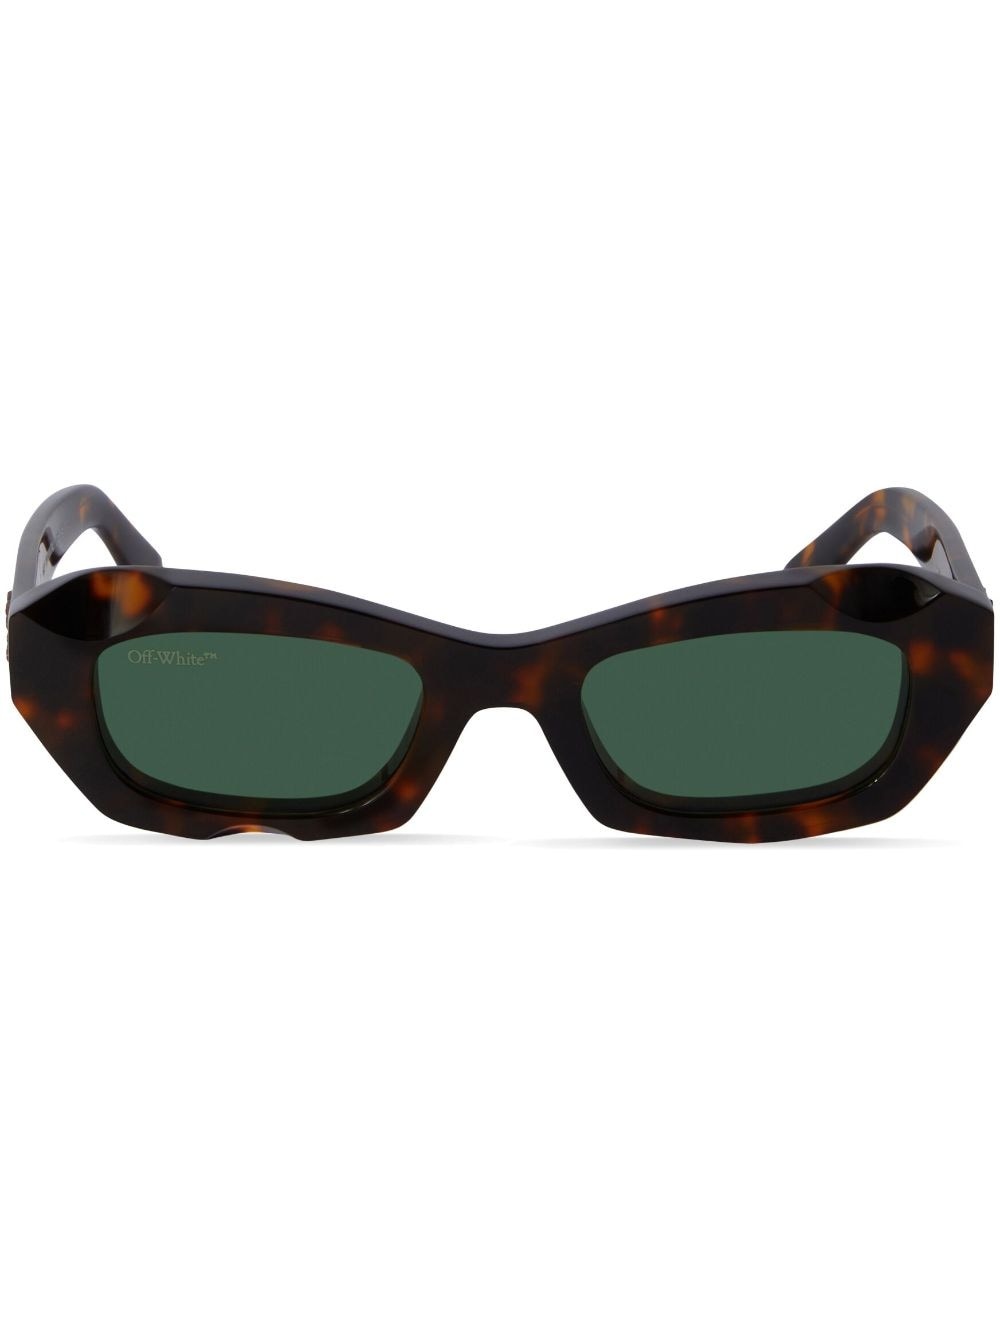 Venezia tortoiseshell rectangle sunglasses - 1